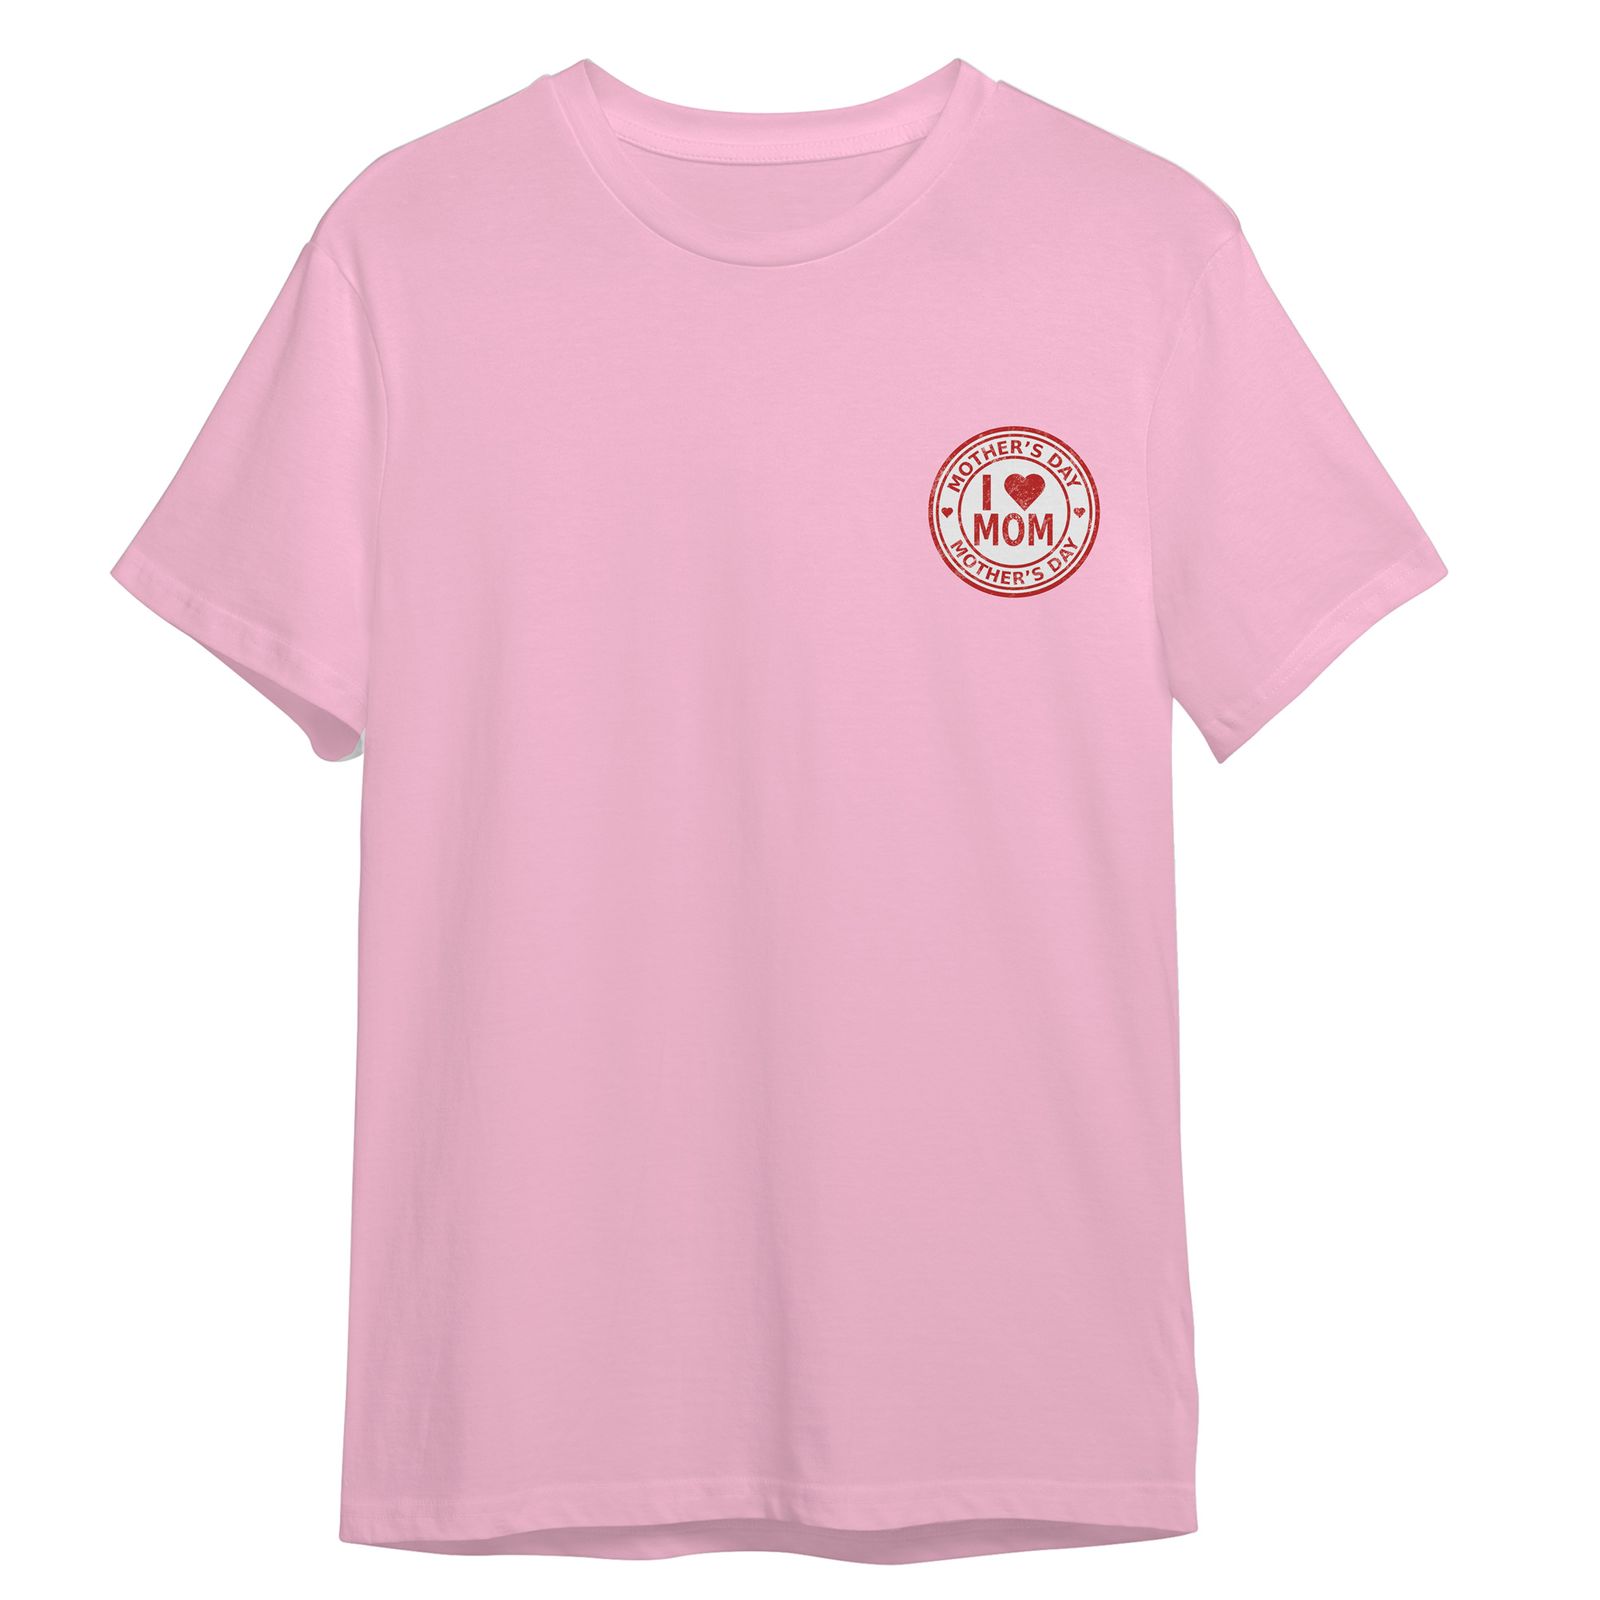 تی شرت آستین کوتاه زنانه مدل روز مادر کد 0376 رنگ صورتی -  - 1